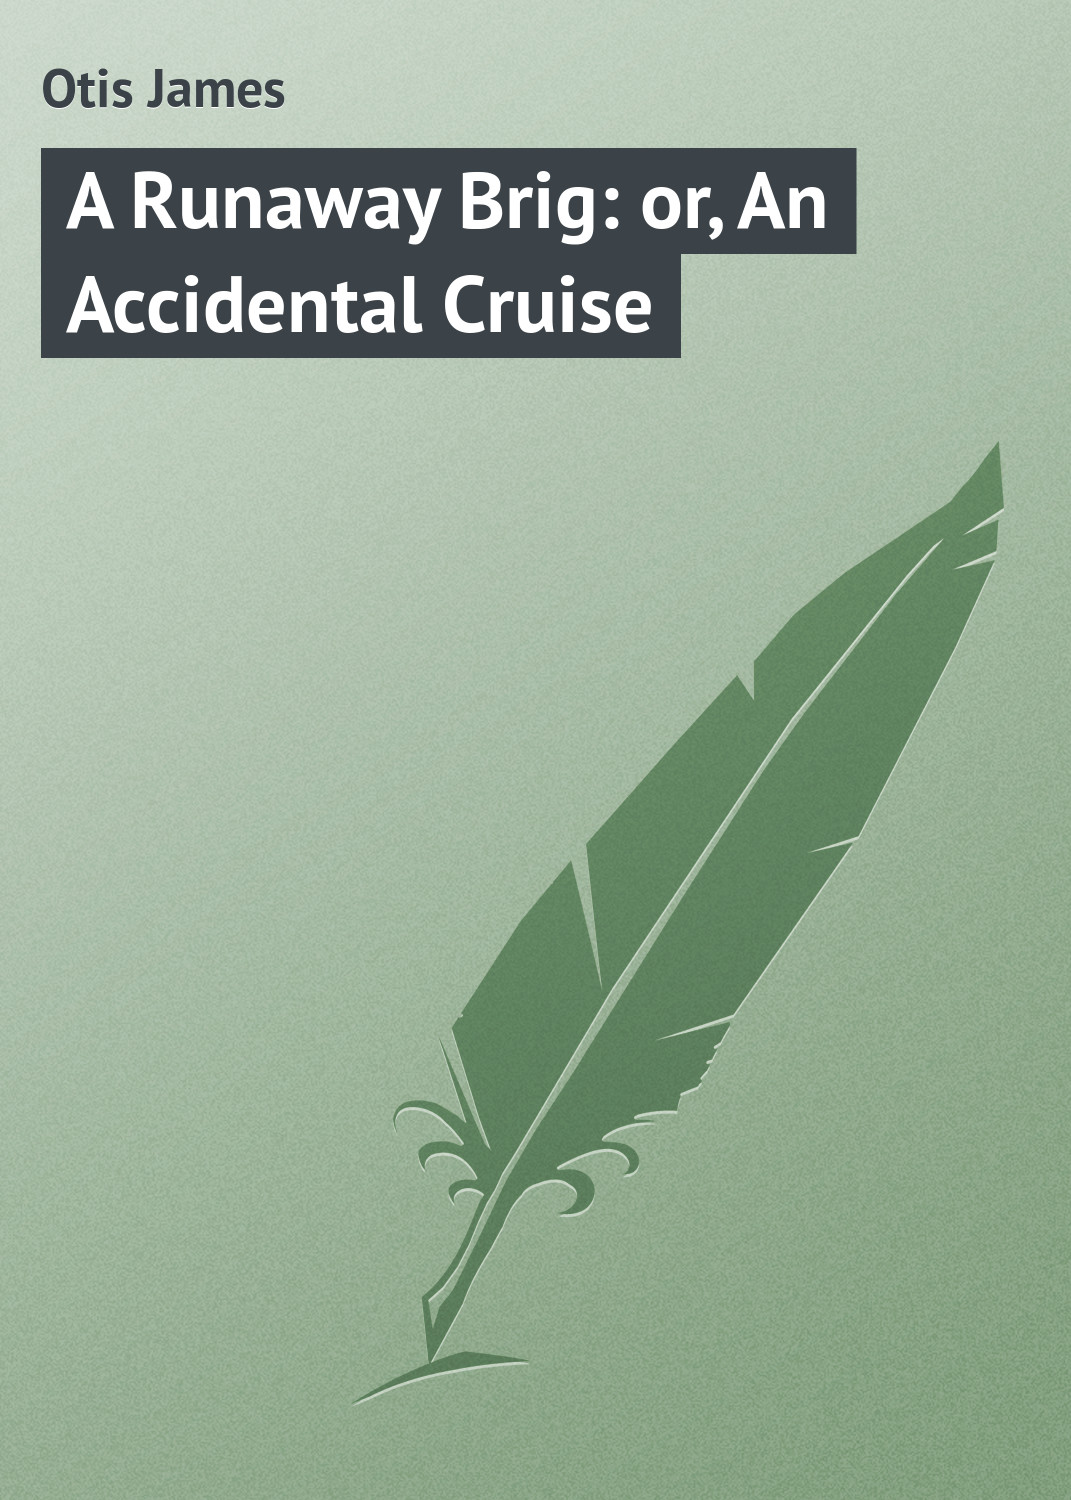 Книга A Runaway Brig: or, An Accidental Cruise из серии , созданная James Otis, может относится к жанру Зарубежная классика, Морские приключения. Стоимость электронной книги A Runaway Brig: or, An Accidental Cruise с идентификатором 23144523 составляет 5.99 руб.